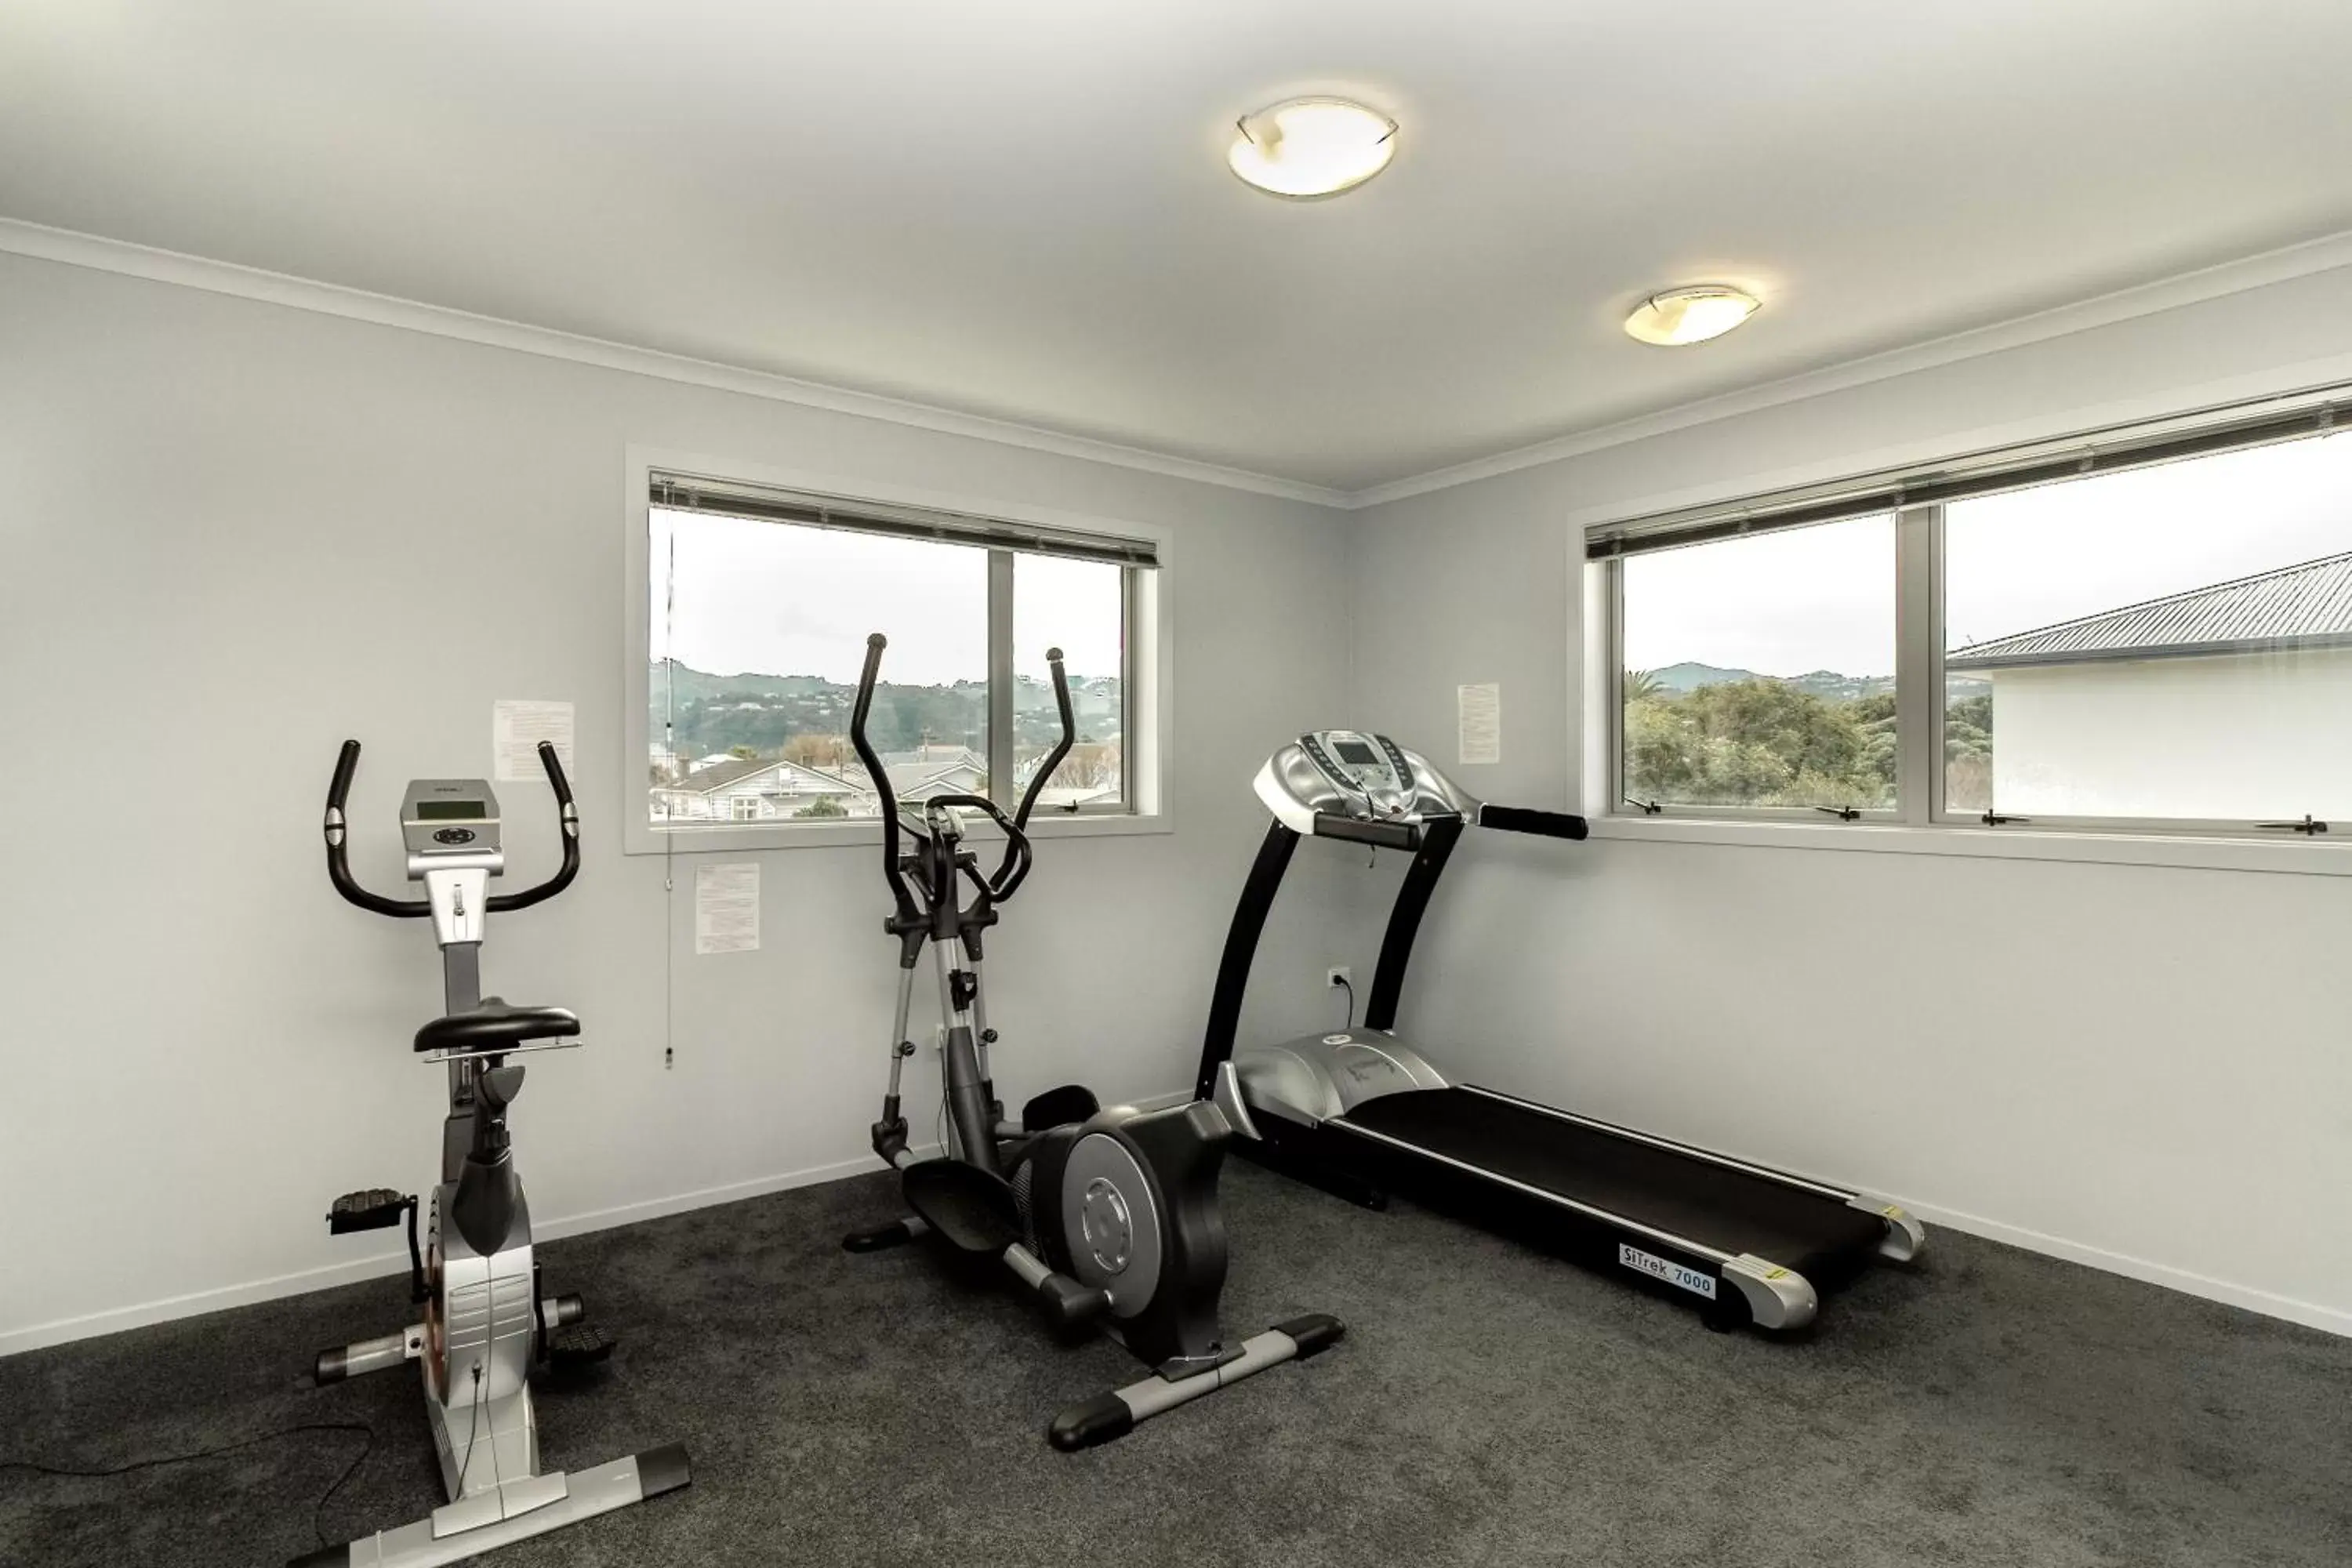 Fitness centre/facilities, Fitness Center/Facilities in BKs Premier Motel Esplanade